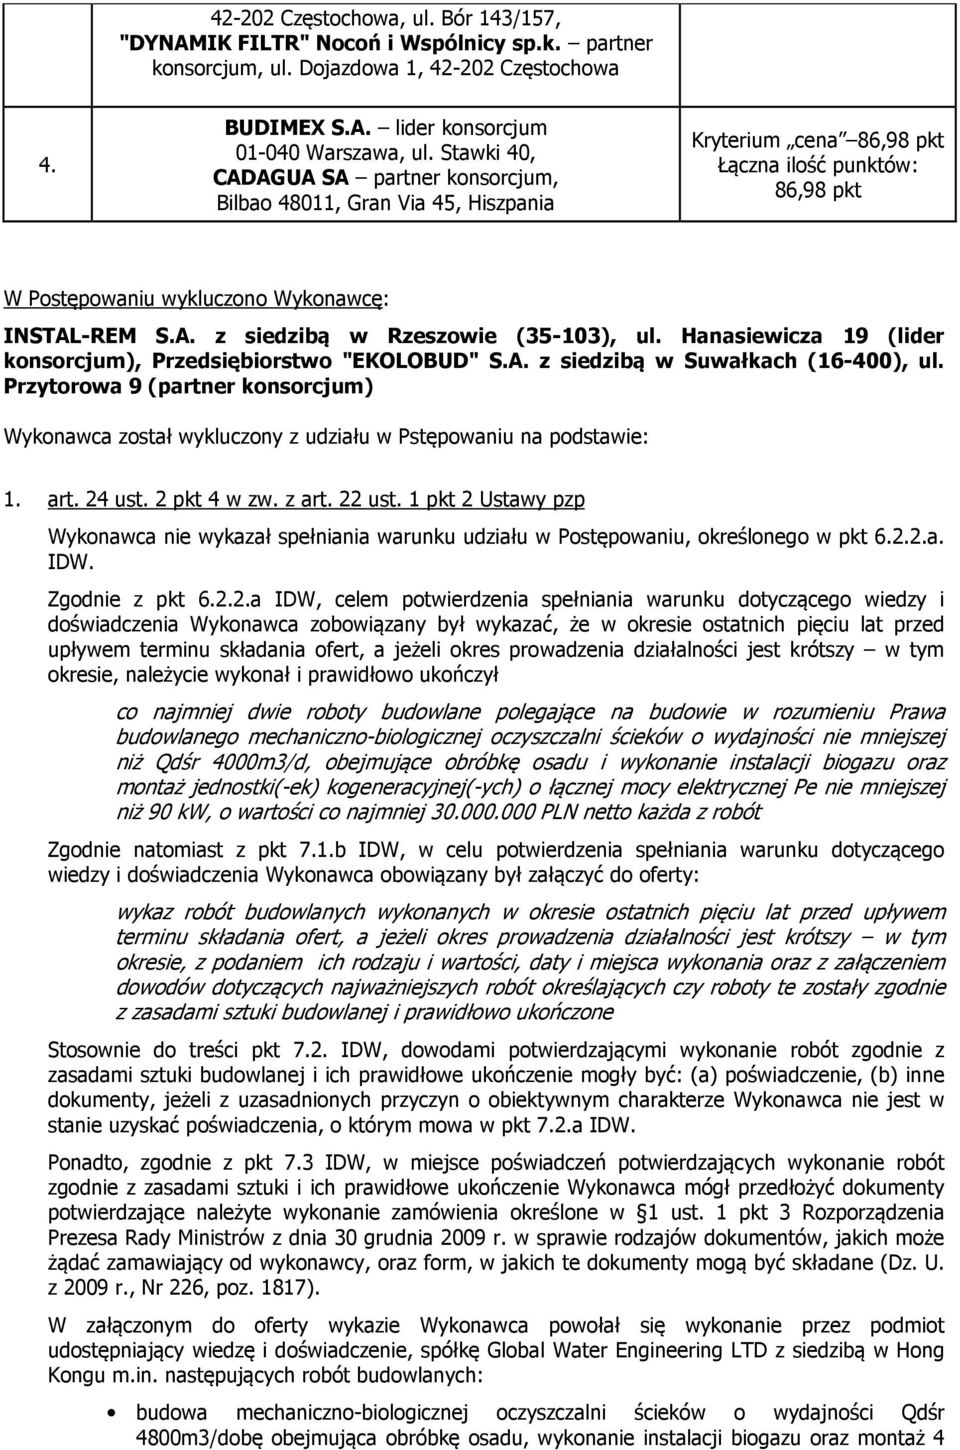 Hanasiewicza 19 (lider konsorcjum), Przedsiębiorstwo "EKOLOBUD" S.A. z siedzibą w Suwałkach (16-400), ul.